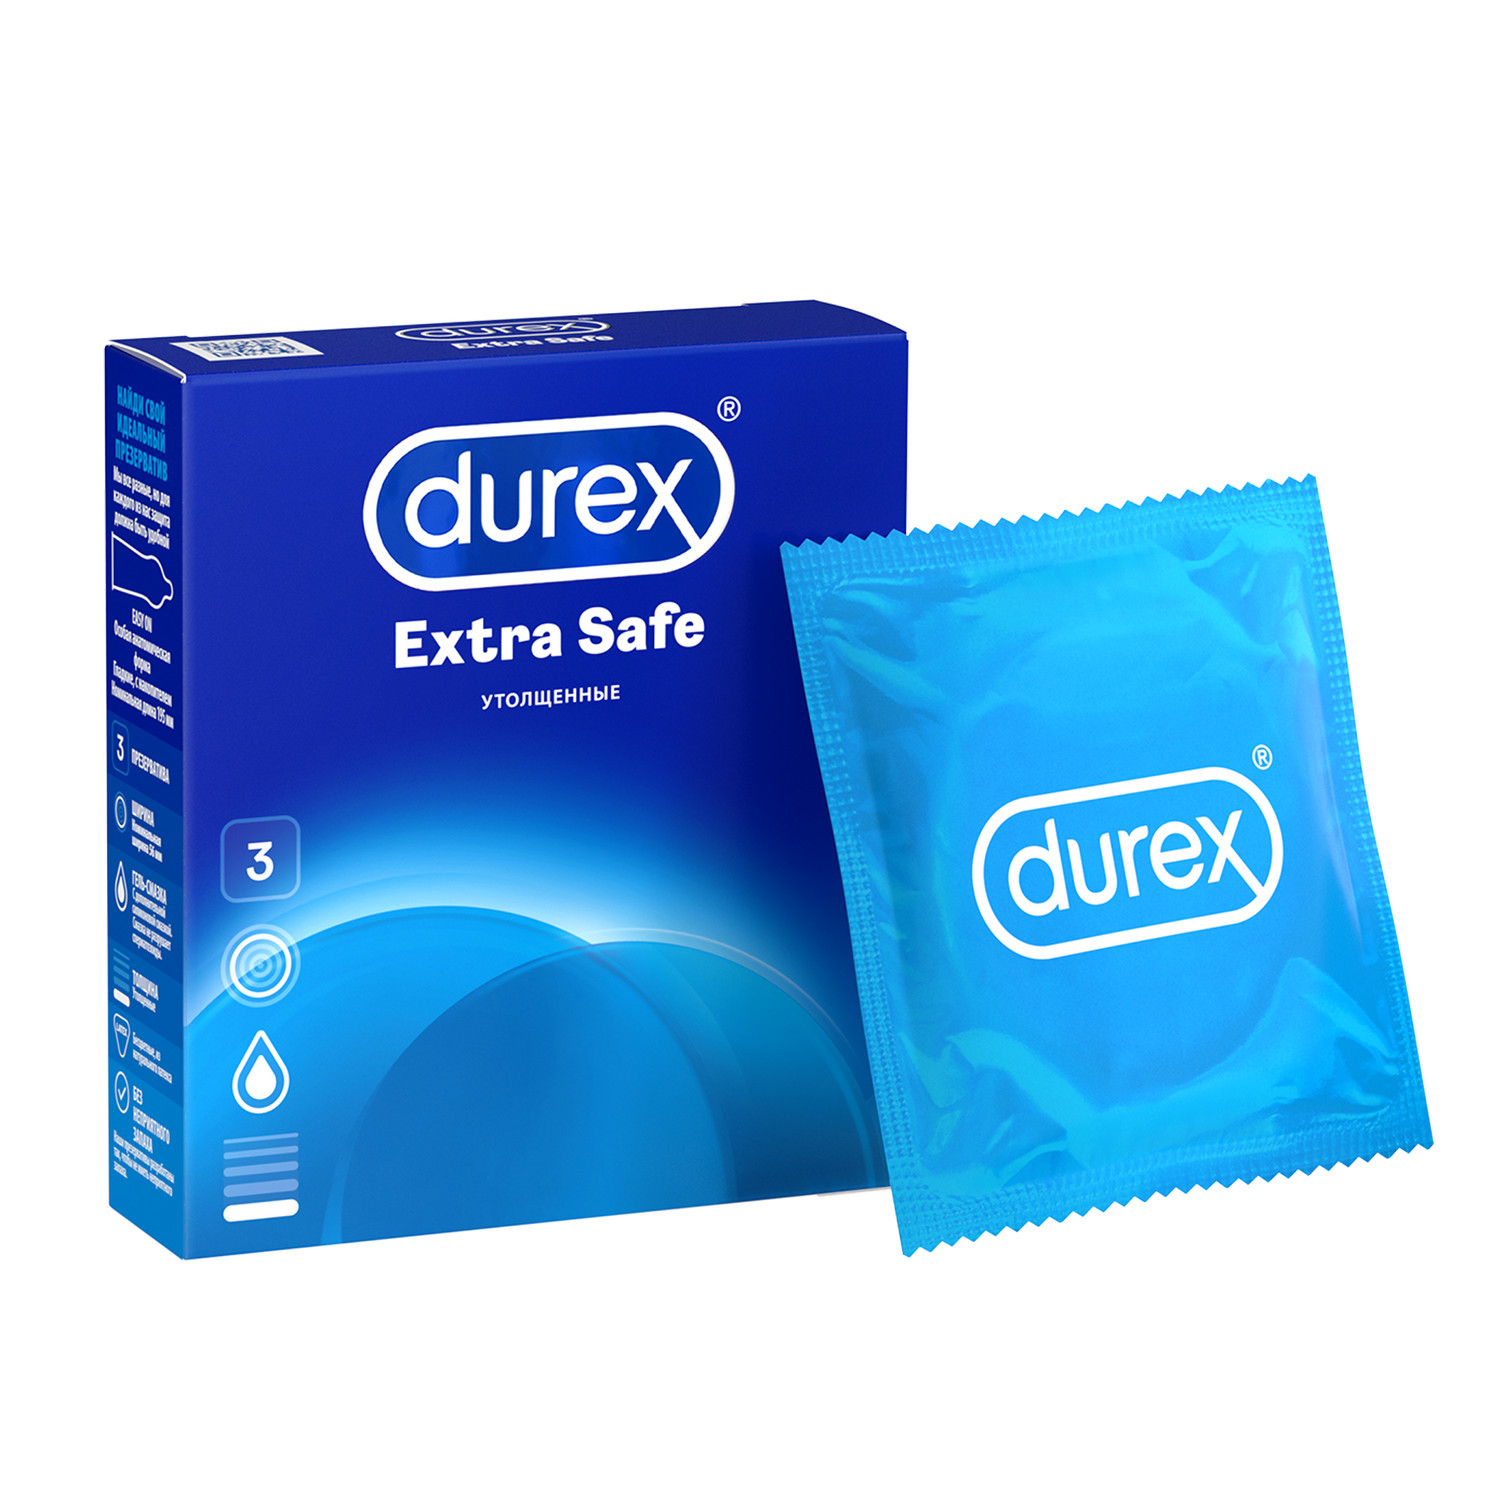 Презервативы Durex Extra Safe утолщенные, 3 шт. наши утехи